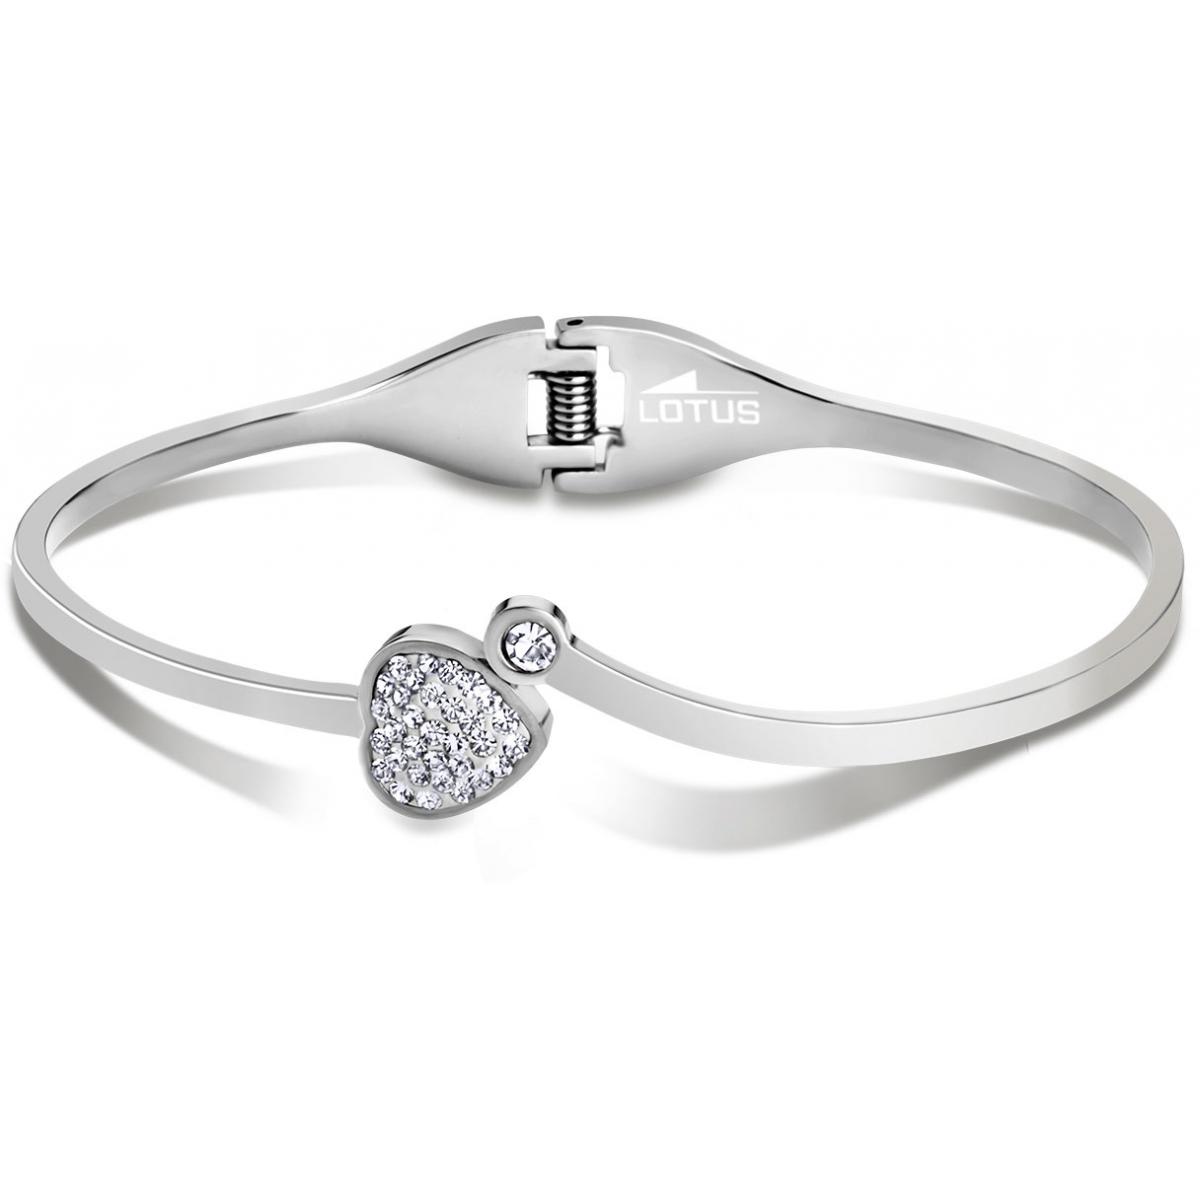 Promo : Bracelet Lotus Style Bijoux BLISS LS1791-2-1 - Bracelet BLISS Acier Femme